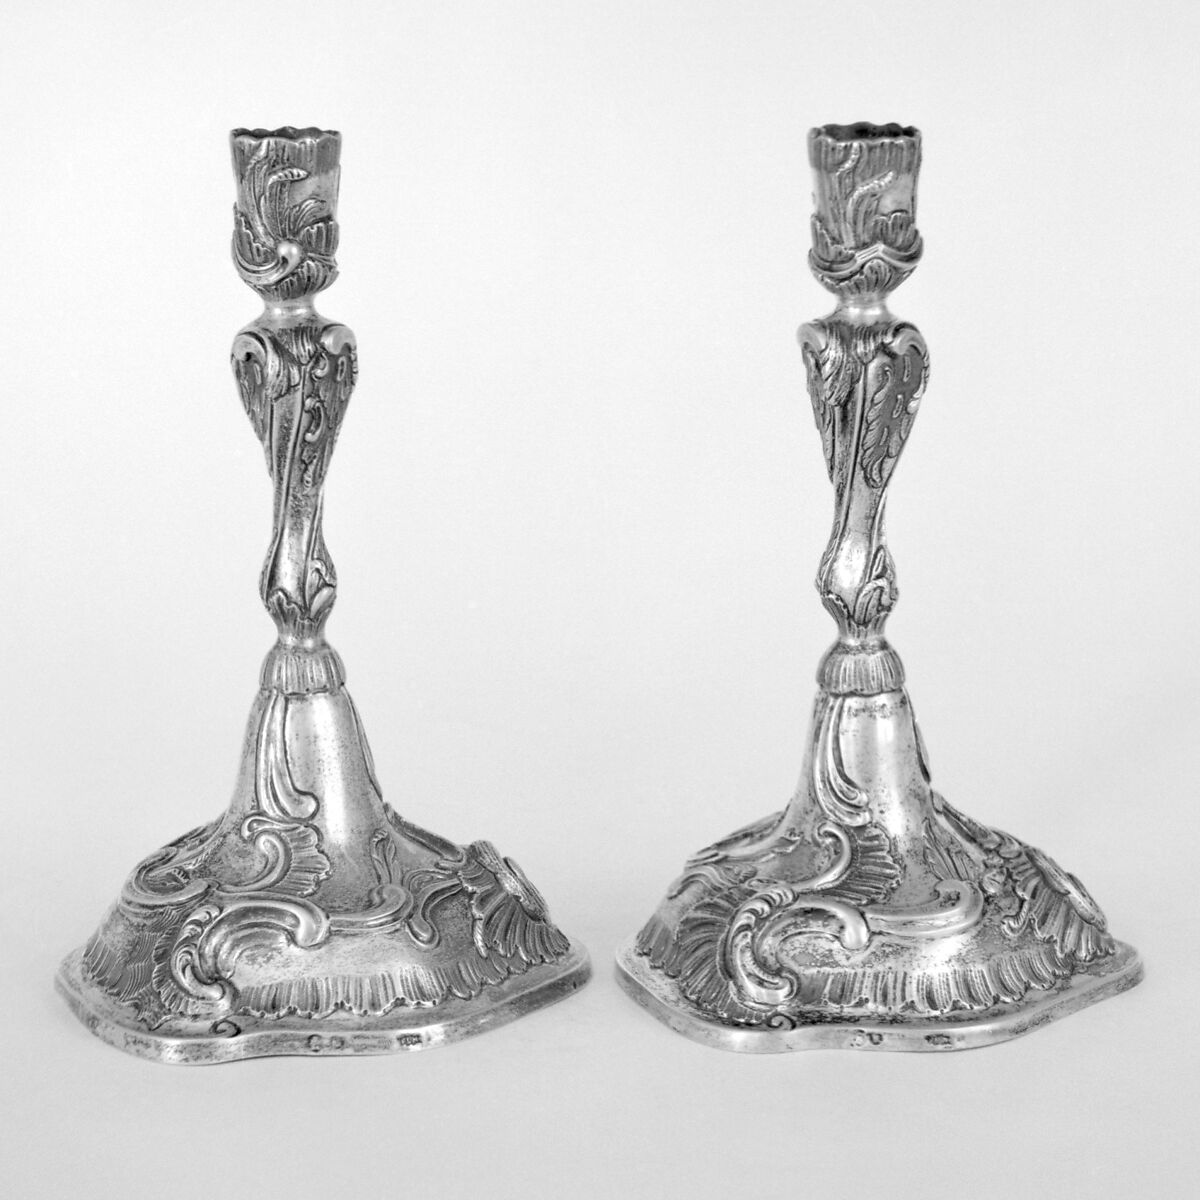 Cast candlestick (one of a pair), Silver, German, Brunswick (Braunschweig) 